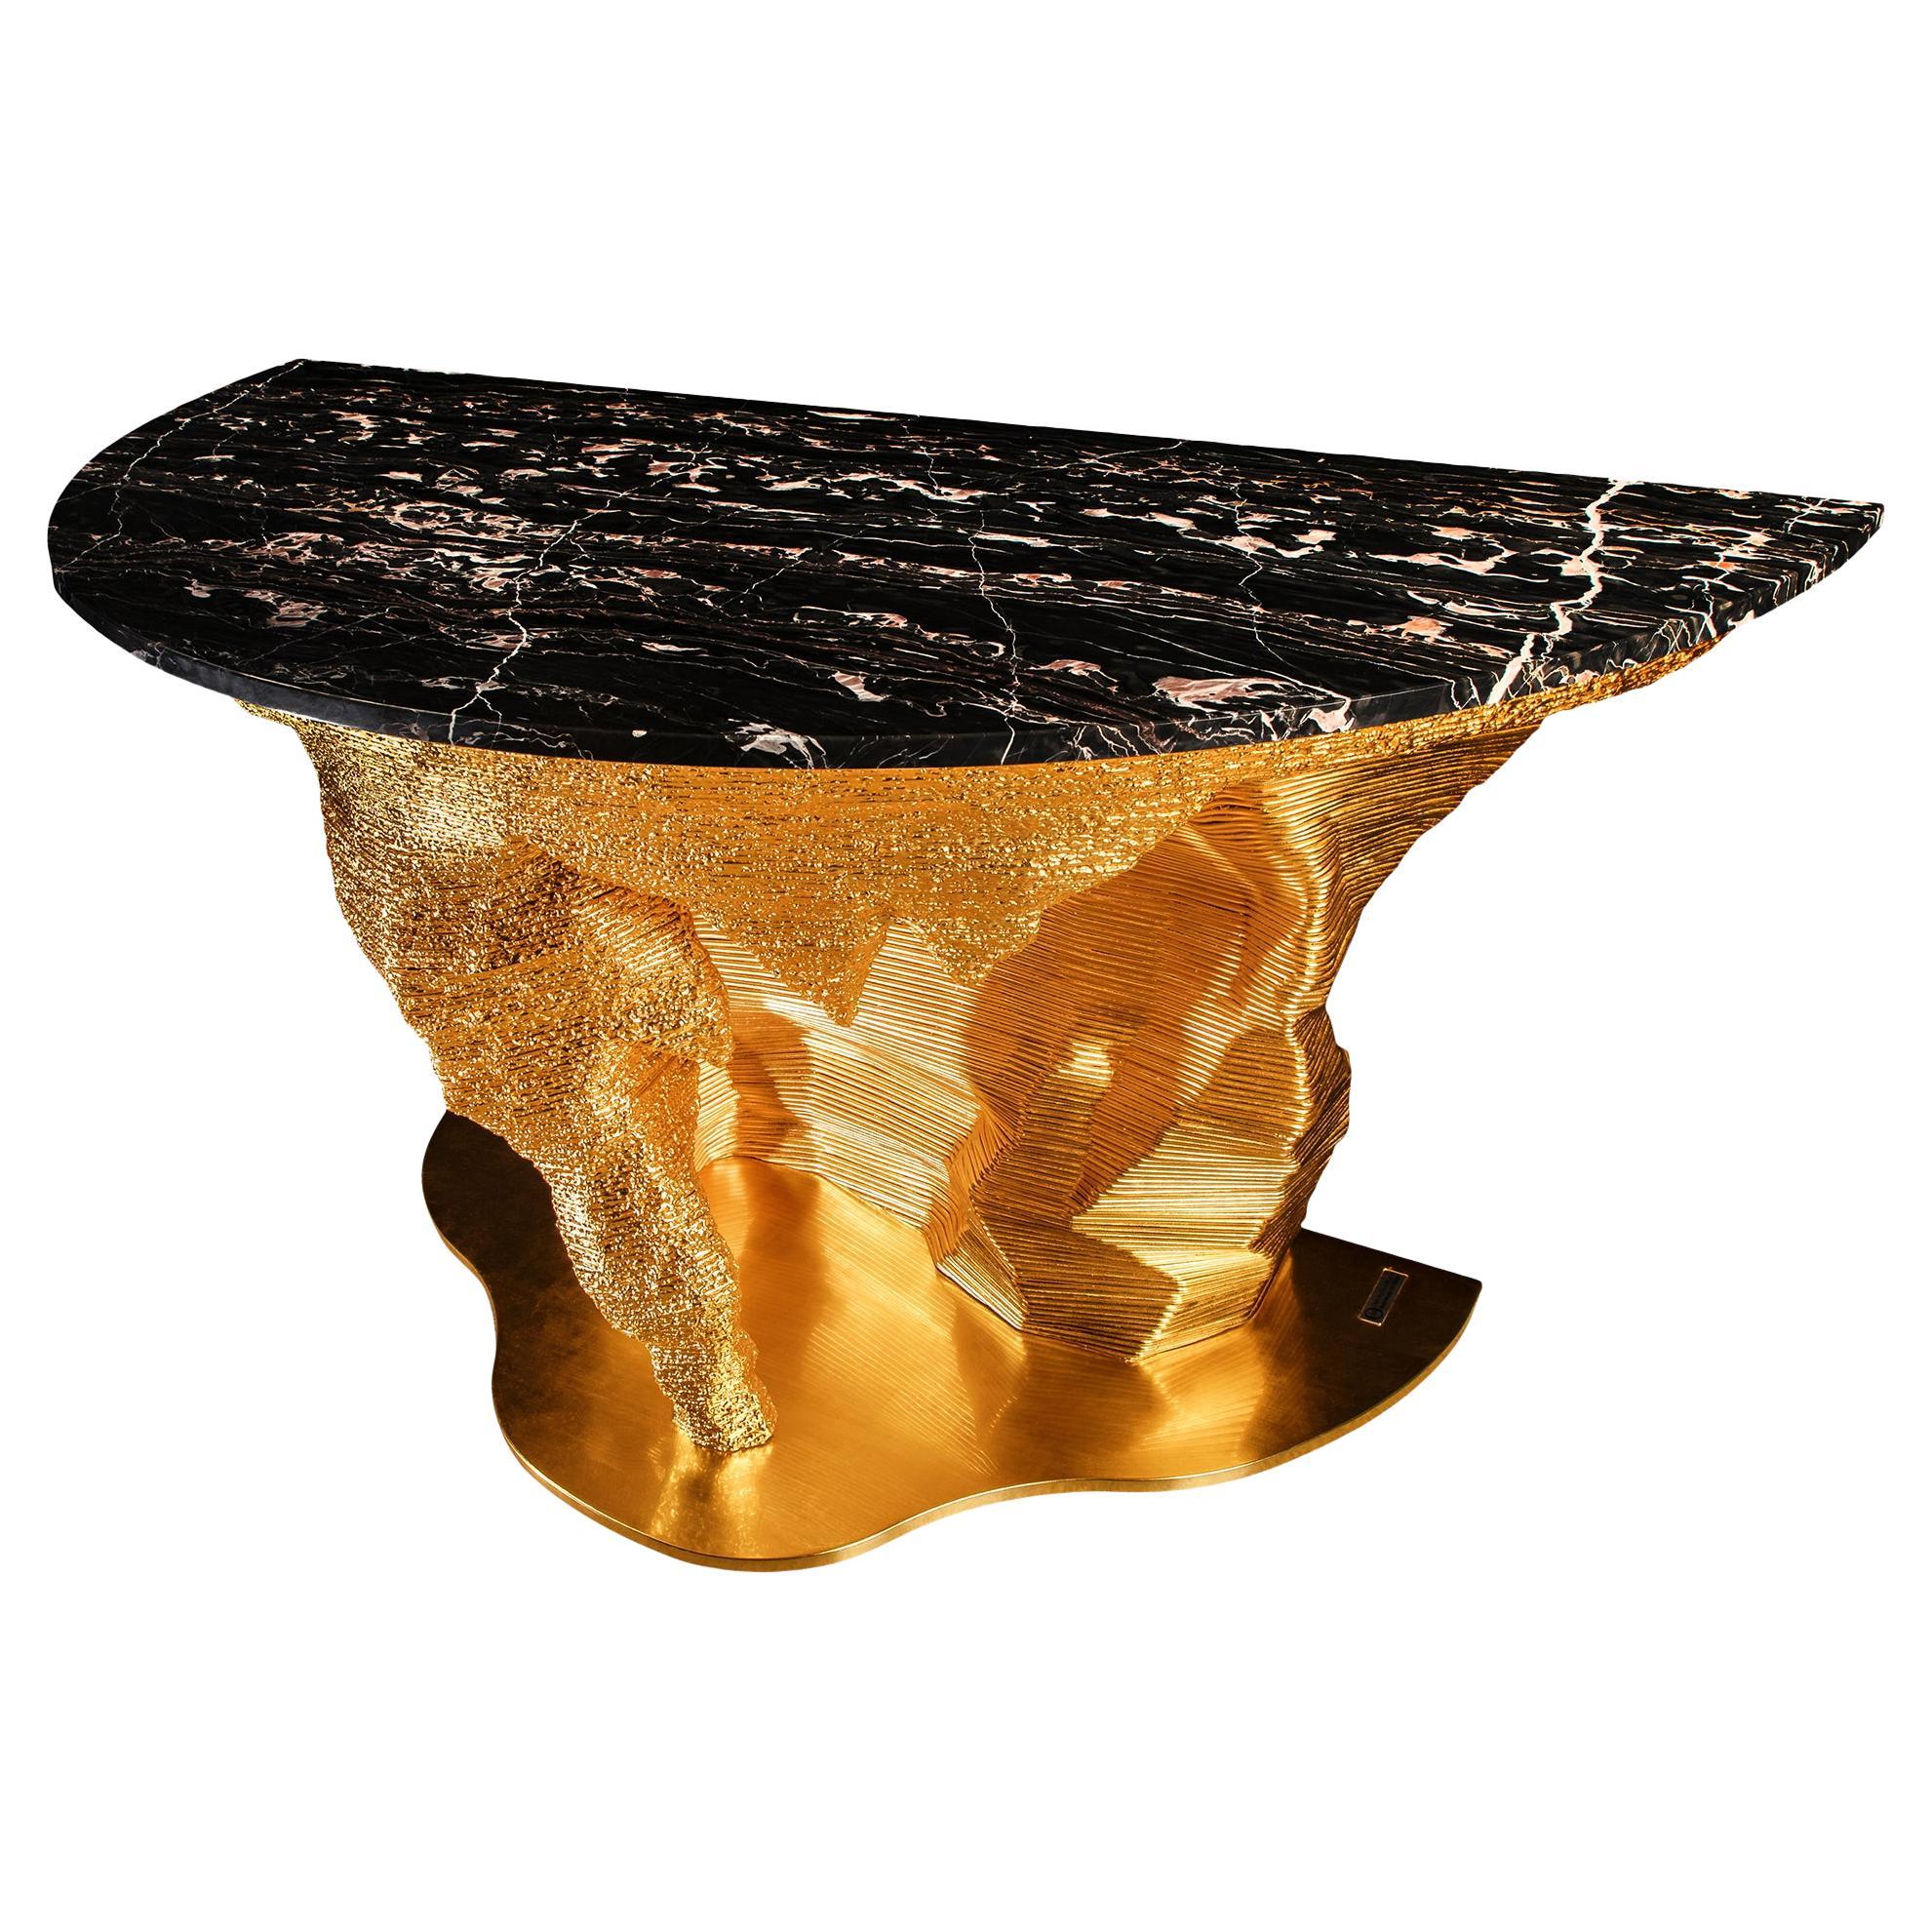 Portoro Marble "GoldMoon Meteorite" design by GiòPozzi for Officina della Scala